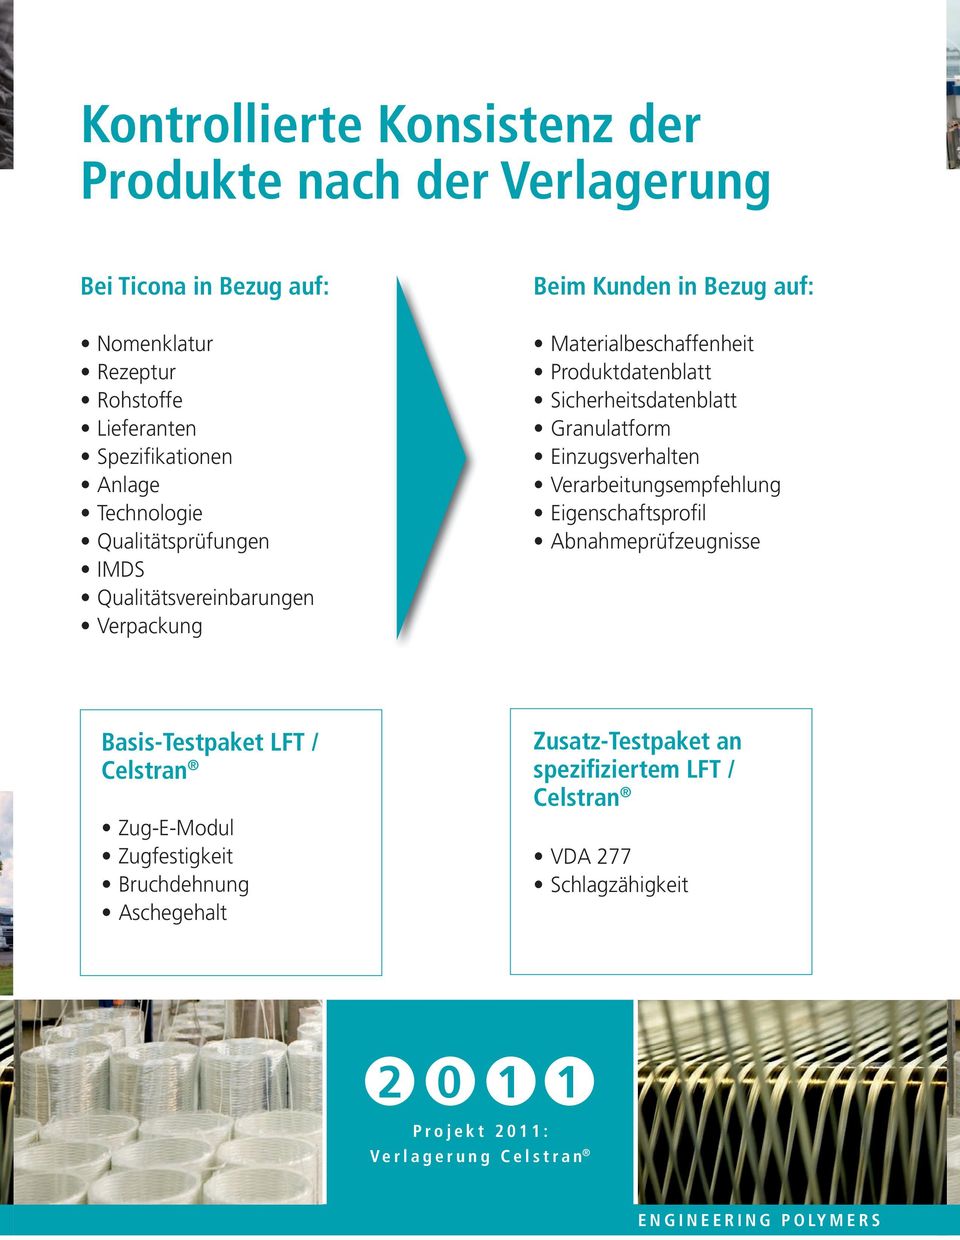 Materialbeschaffenheit Produktdatenblatt Sicherheitsdatenblatt Granulatform Einzugsverhalten Verarbeitungsempfehlung Eigenschaftsprofil